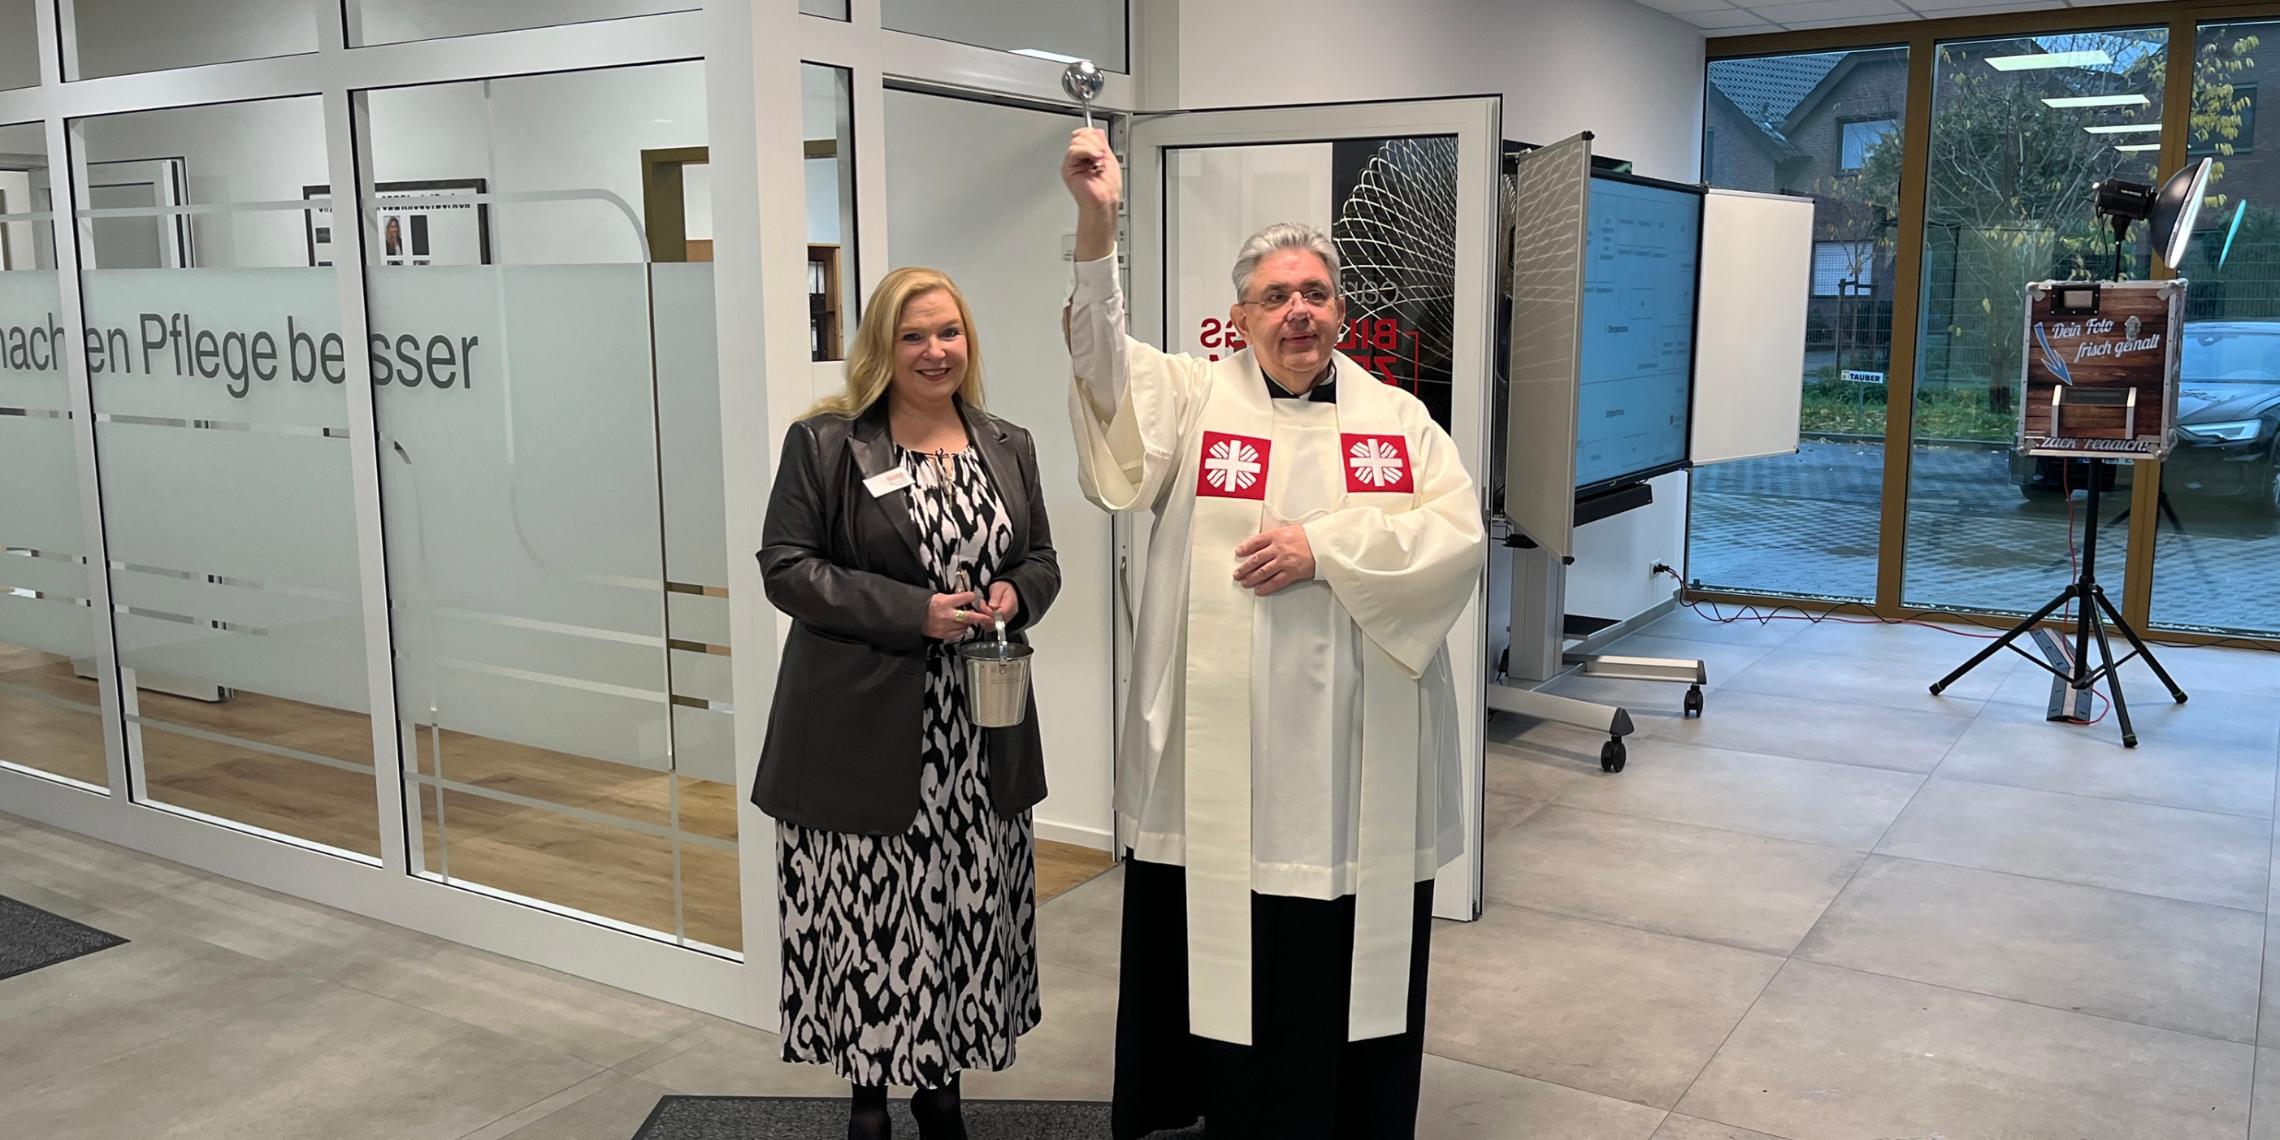 Pfarrer Stefan Scho segnete die neuen Räumlichkeiten des Caritas Bildungszentrums Rhede. Schulleiterin Maria Werner assistierte.